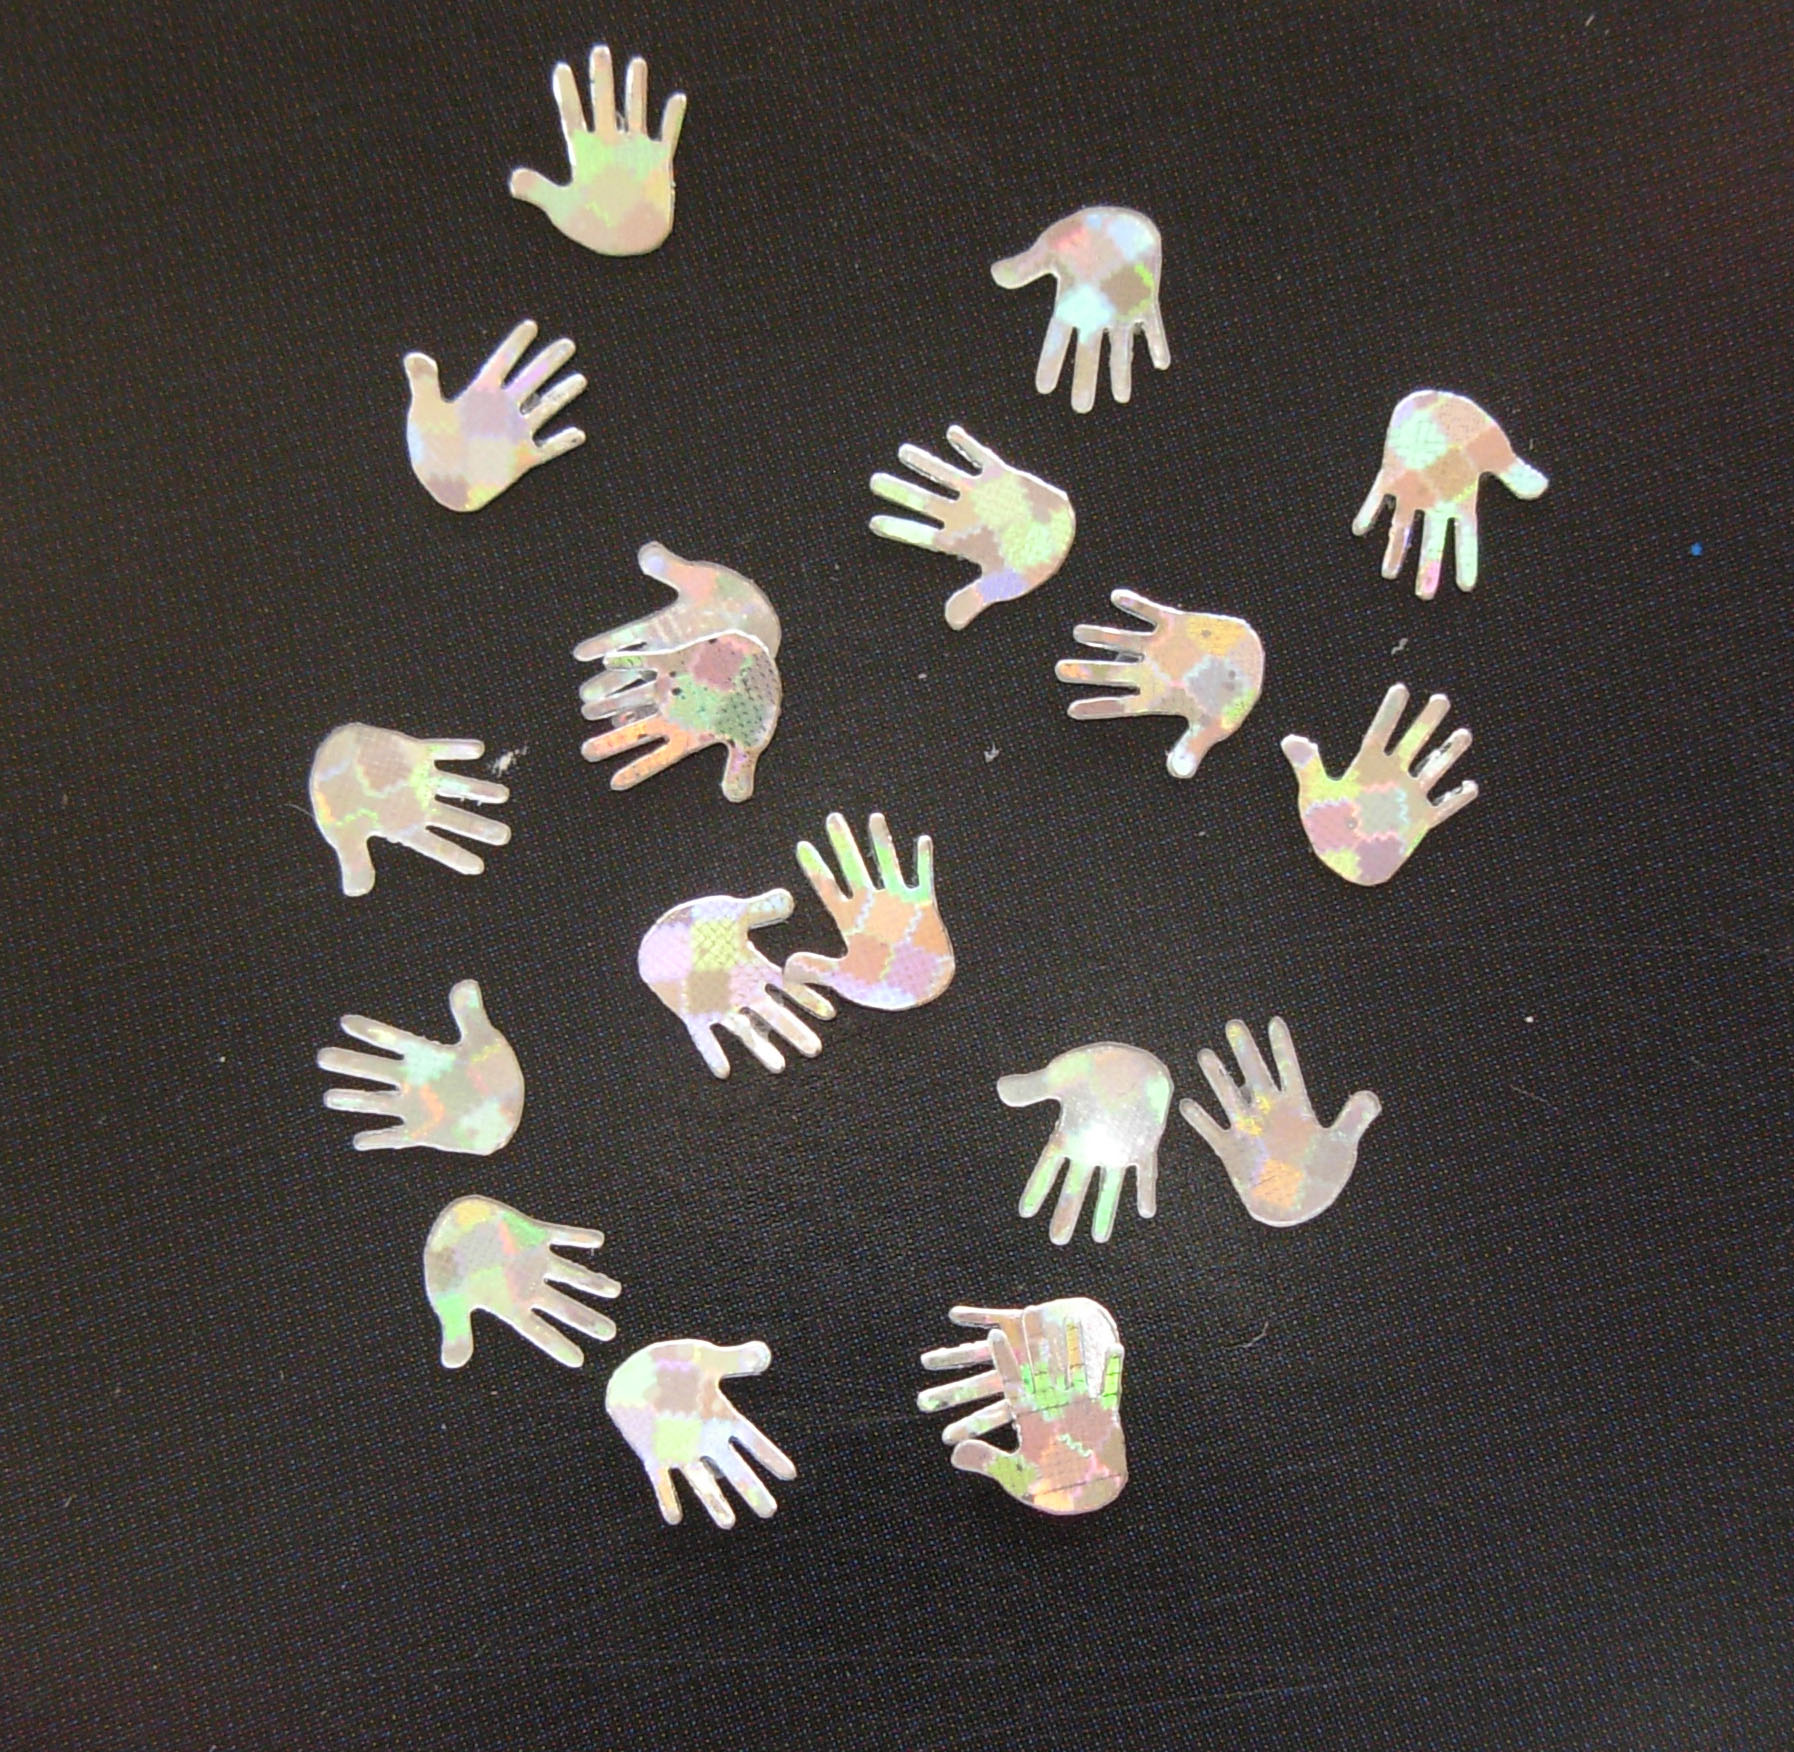 1108: Silver Hologram Hands Micro Confetti